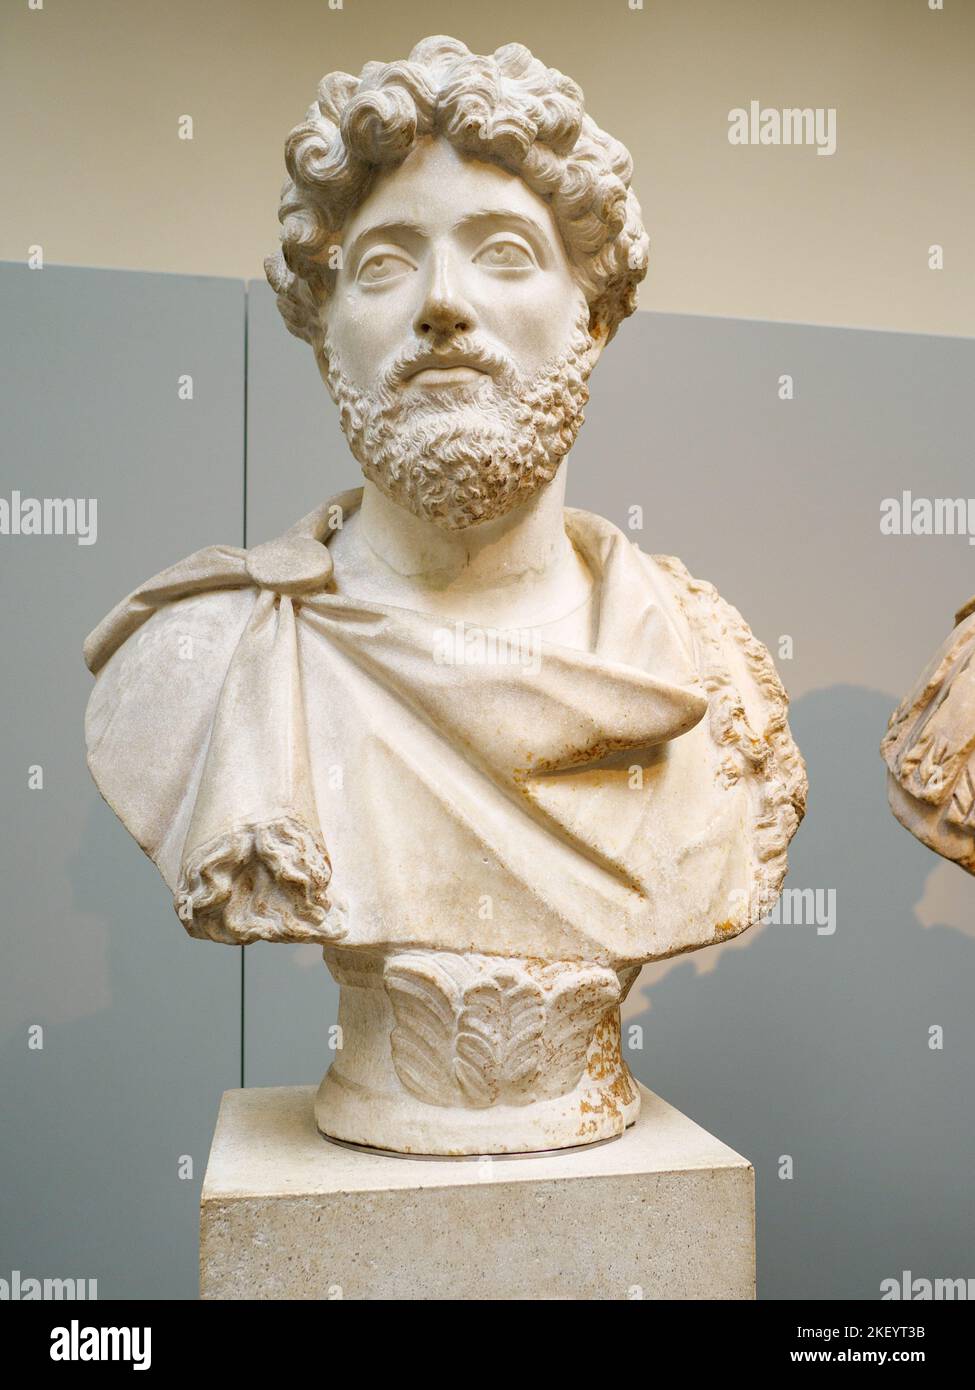 Marble bust of Roman emperor Marcus Aurelius in the British Museum, London, UK Stock Photo